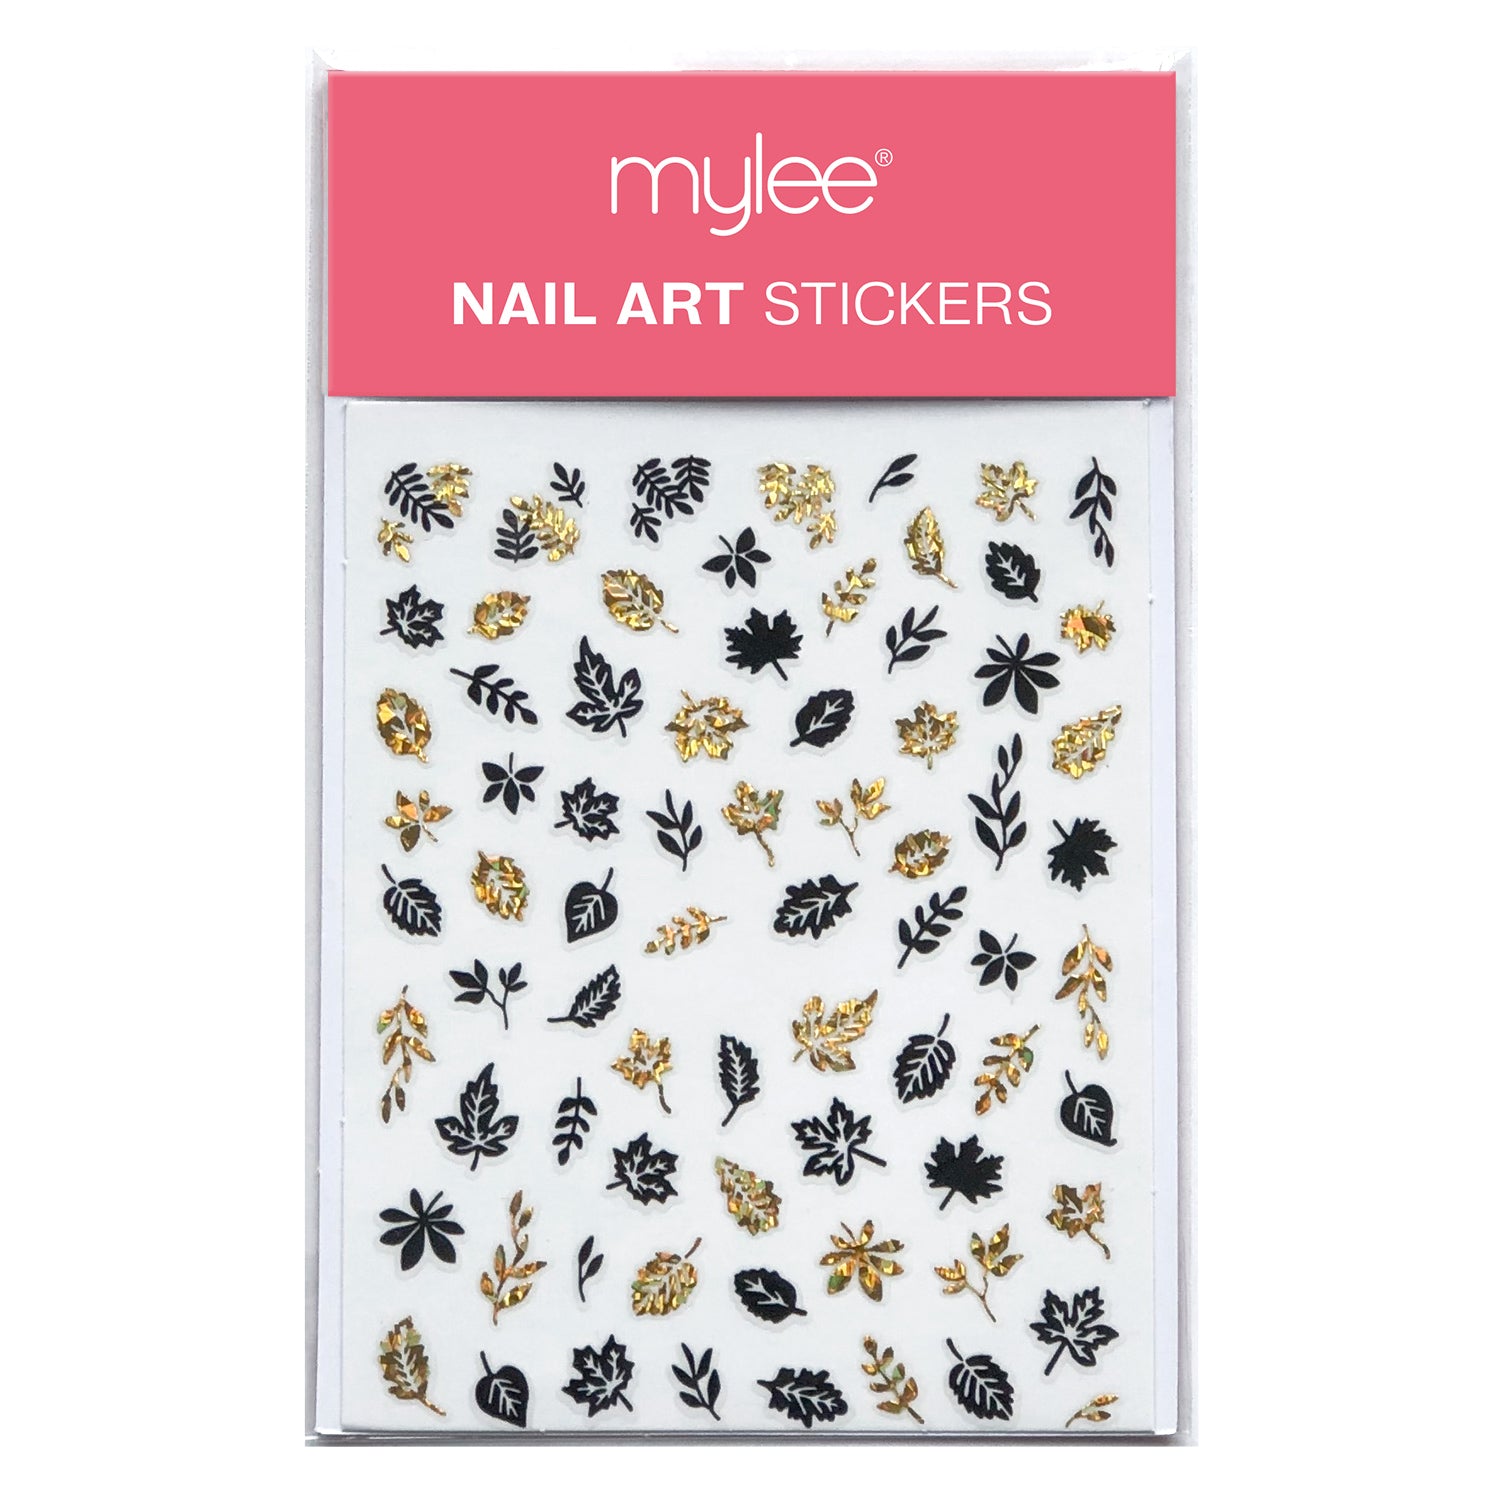 Wavy Nail Art Sticker Sheets - Nail Supplies Mumbai